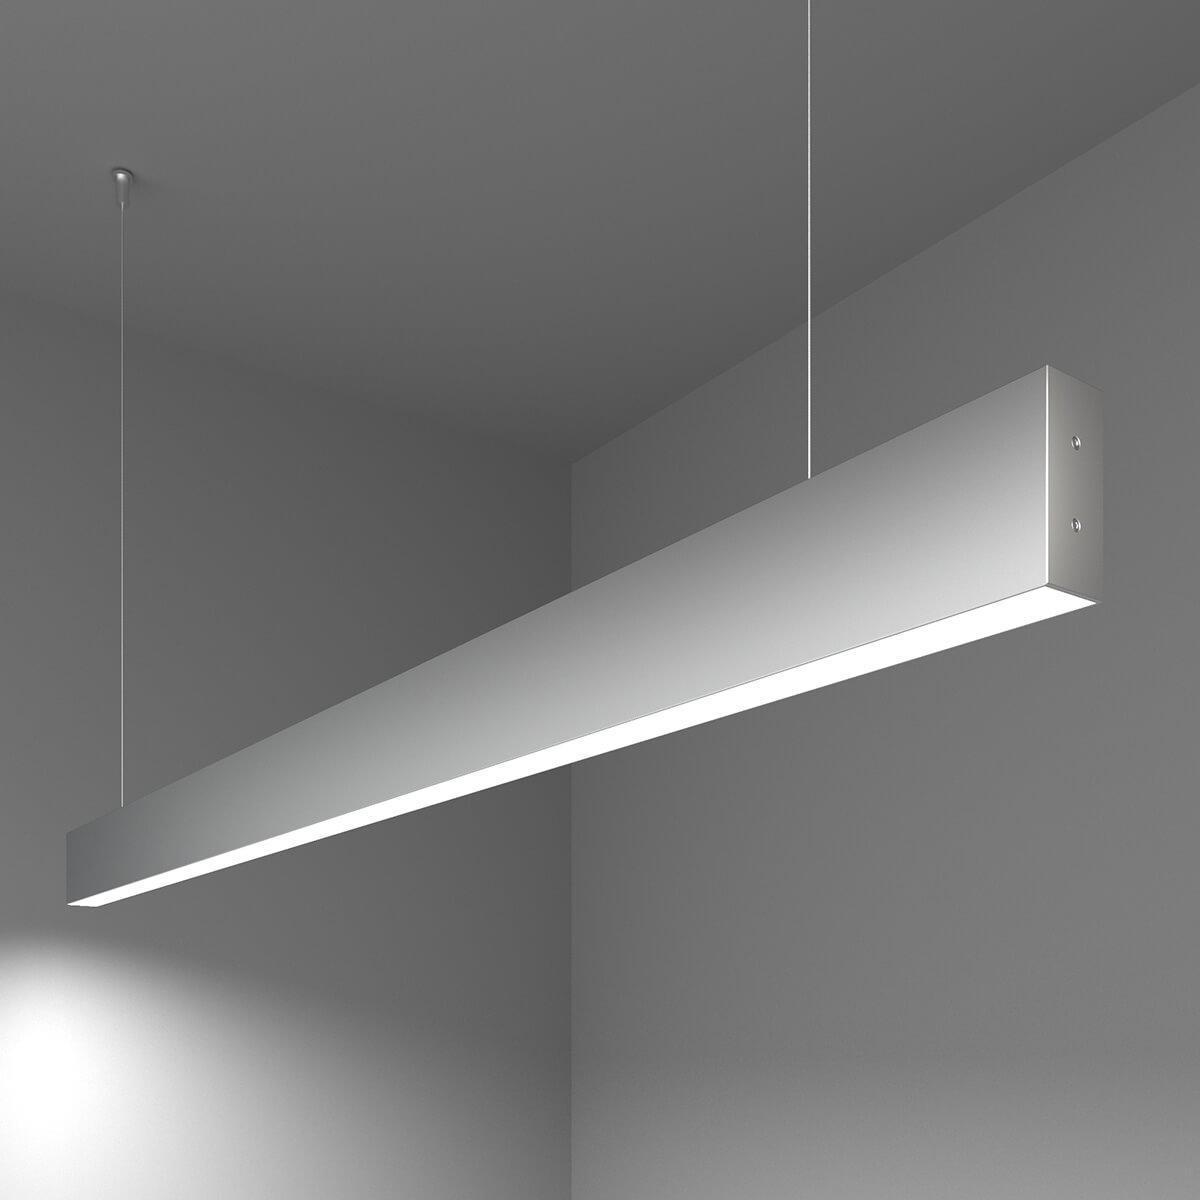 Подвесной светодиодный светильник Elektrostandard LSG-01-1-8 128-21-6500-MS 4690389129506 светодиодный потолочный светильник 18 вт круглый потолочный светильник для кухни спальни прихожей белый свет 6500 7000k